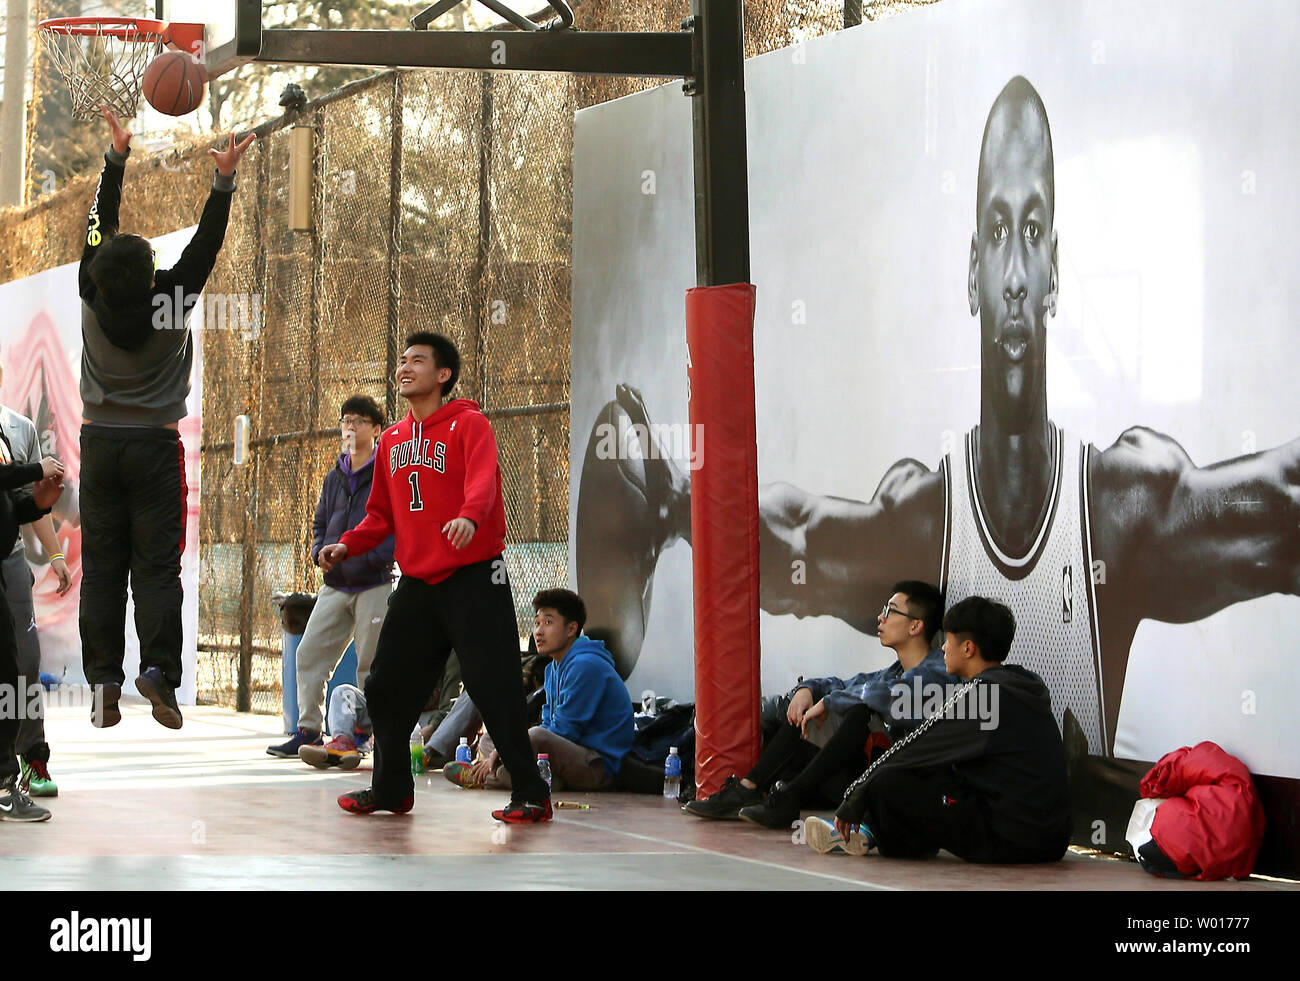 La leyenda de la NBA Michael Jordan aparece en un anuncio de ropa de Nike  basketball en una cancha de baloncesto en el centro de Pekín el 18 de  febrero de 2015.